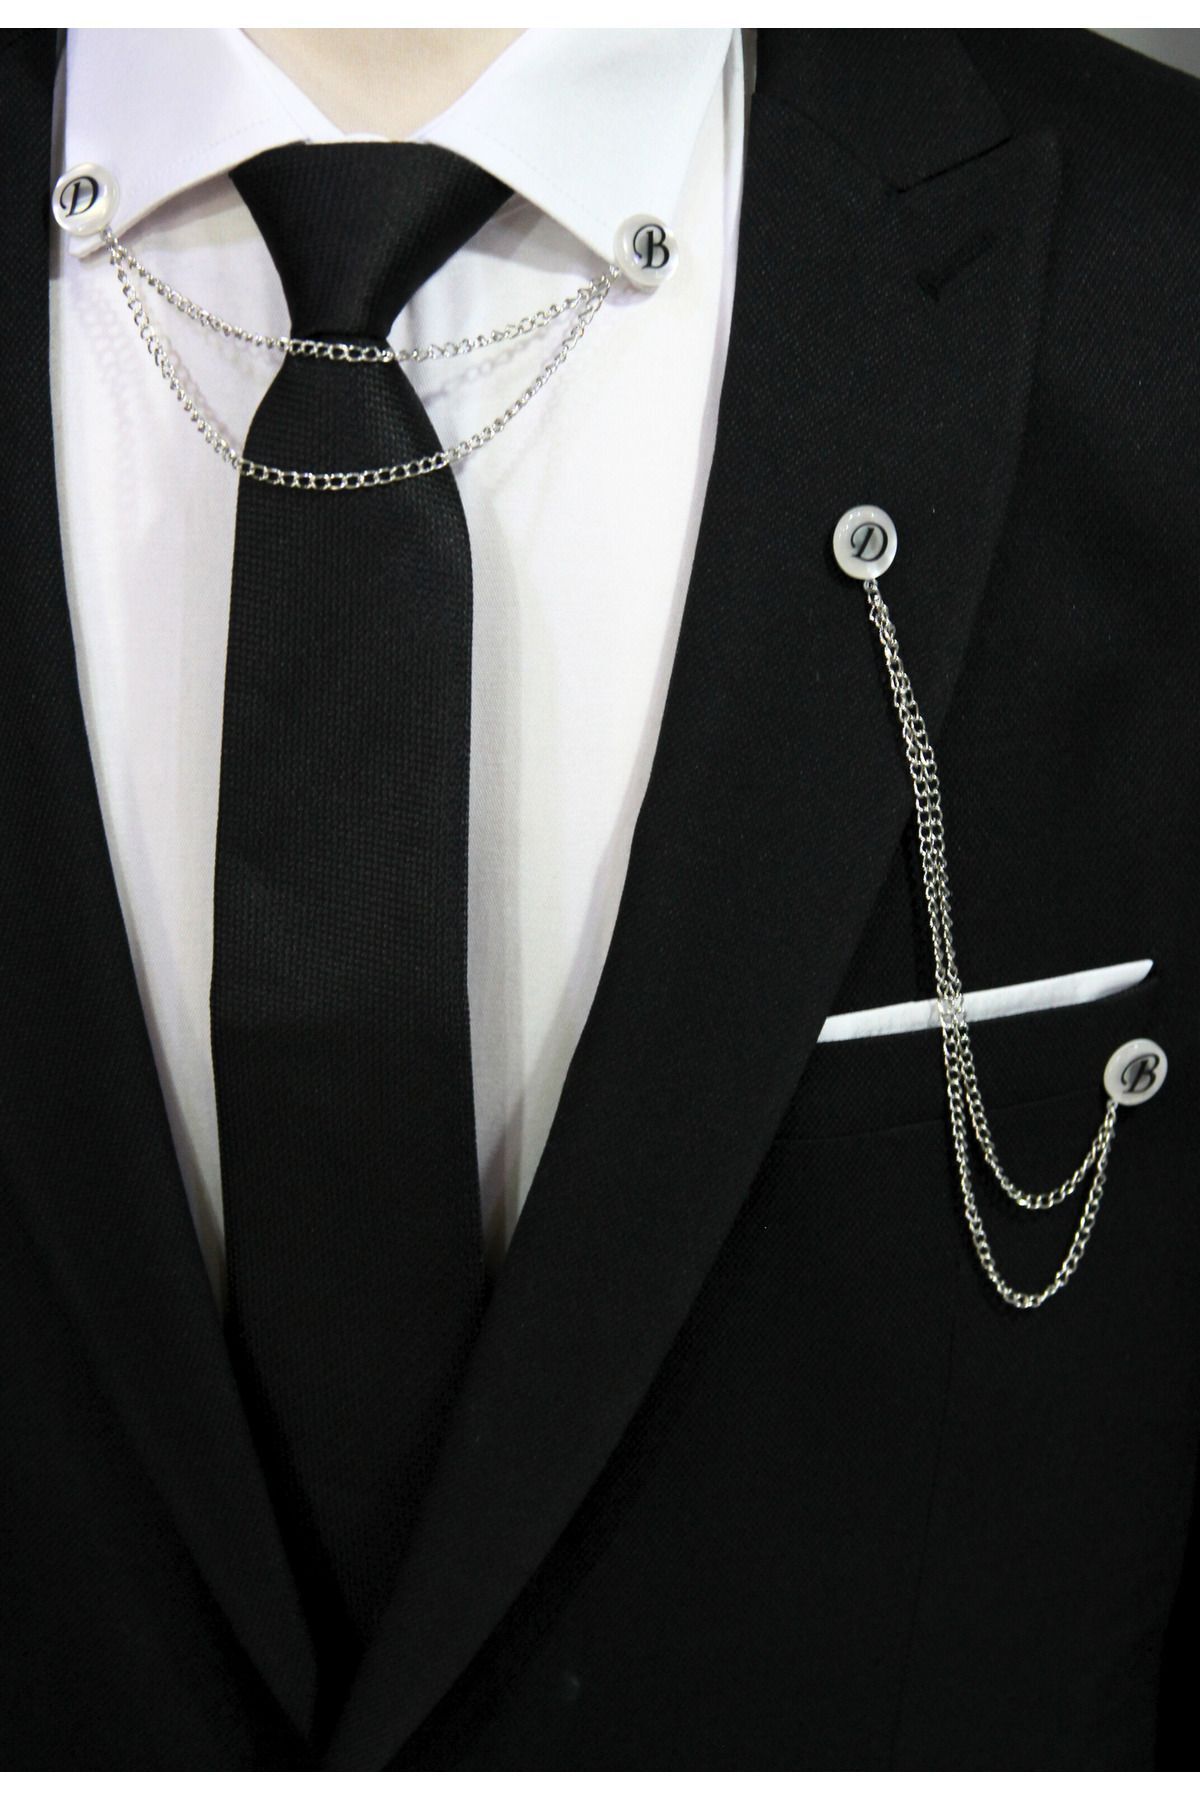 Elegante Cravatte Kişiye Özel İstenilen Harflerde Yaka İğnesi Seti ve Siyah Kravat Cep Mendili